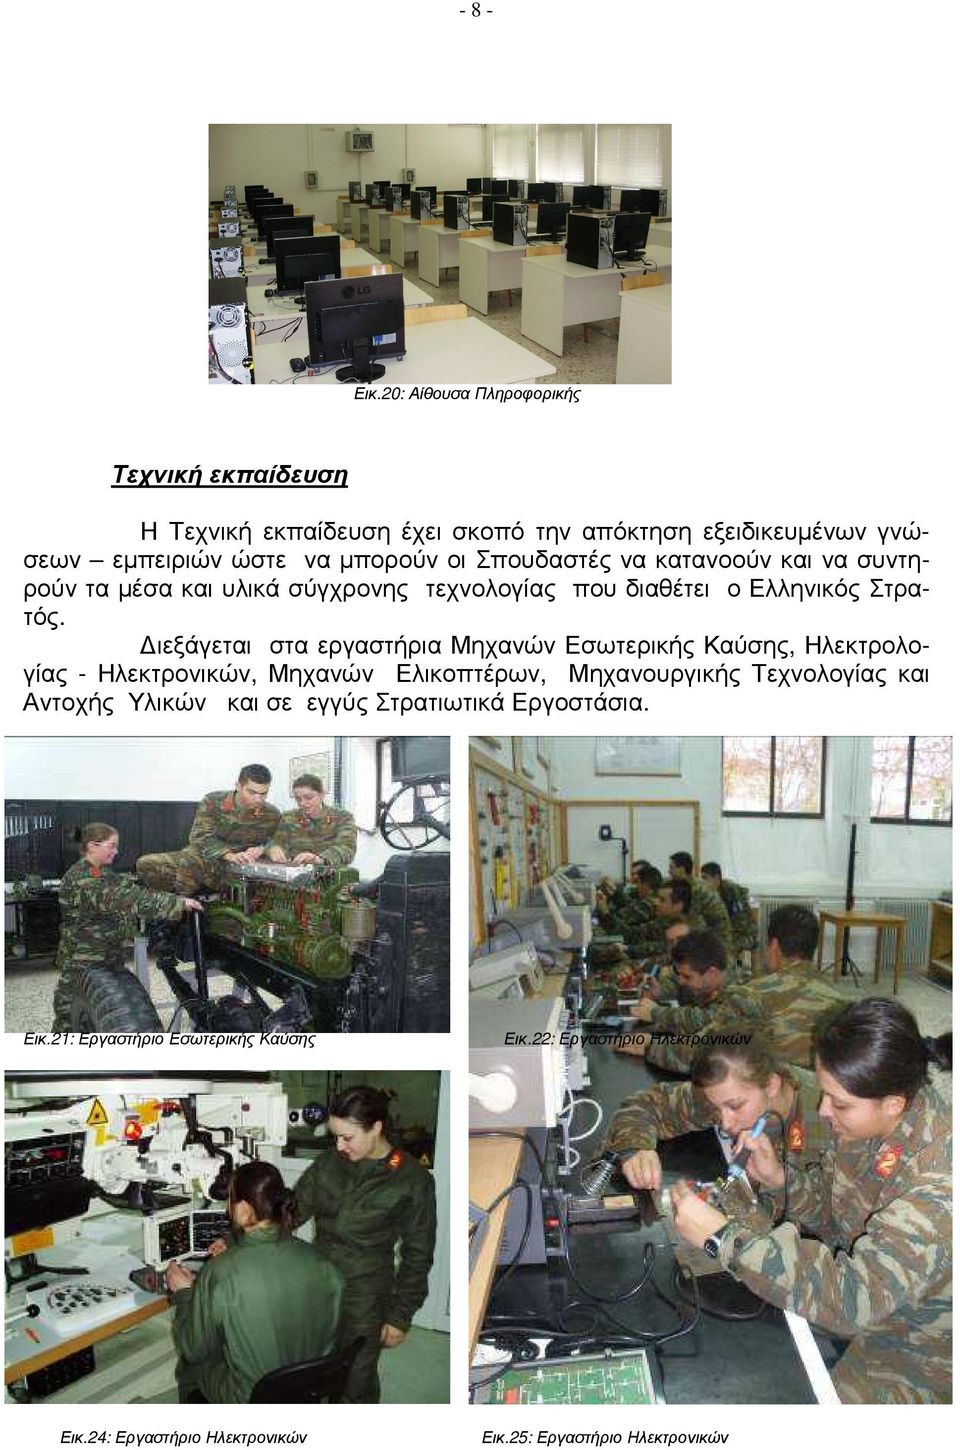 Σπουδαστές να κατανοούν και να συντηρούν τα µέσα και υλικά σύγχρονης τεχνολογίας που διαθέτει ο Ελληνικός Στρατός.